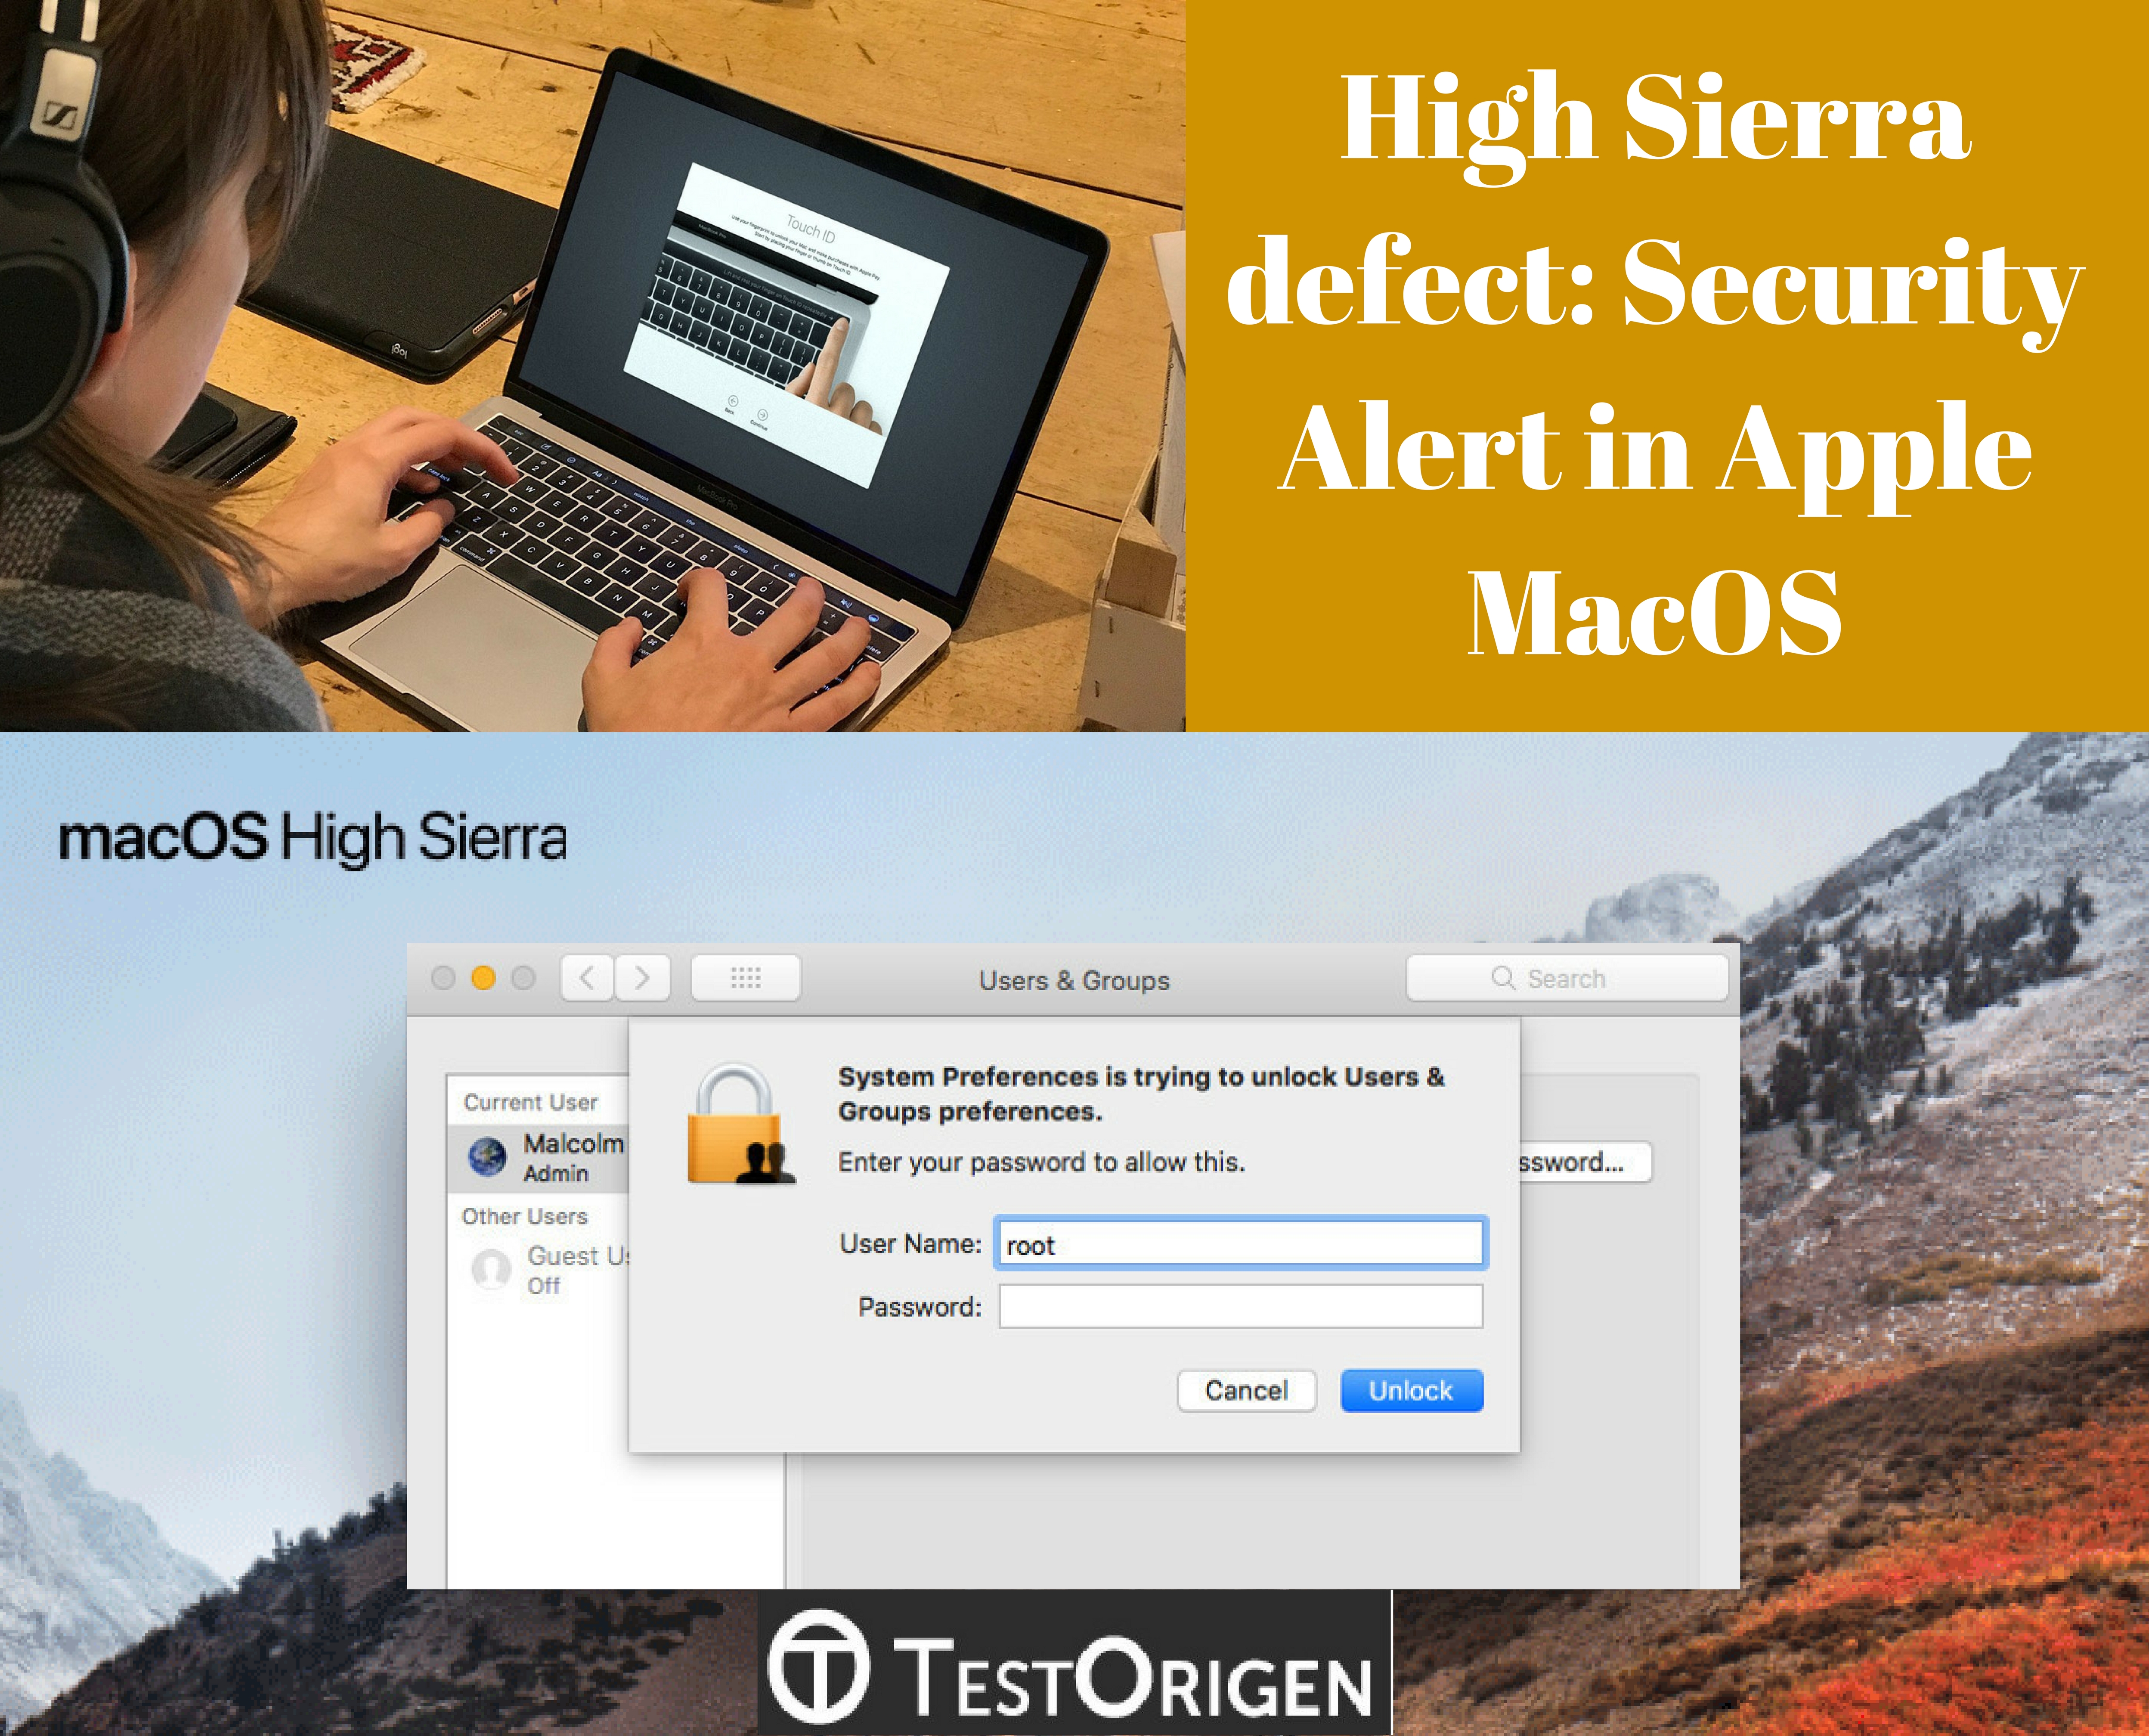 High Sierra defect: Security Alert in Apple MacOS